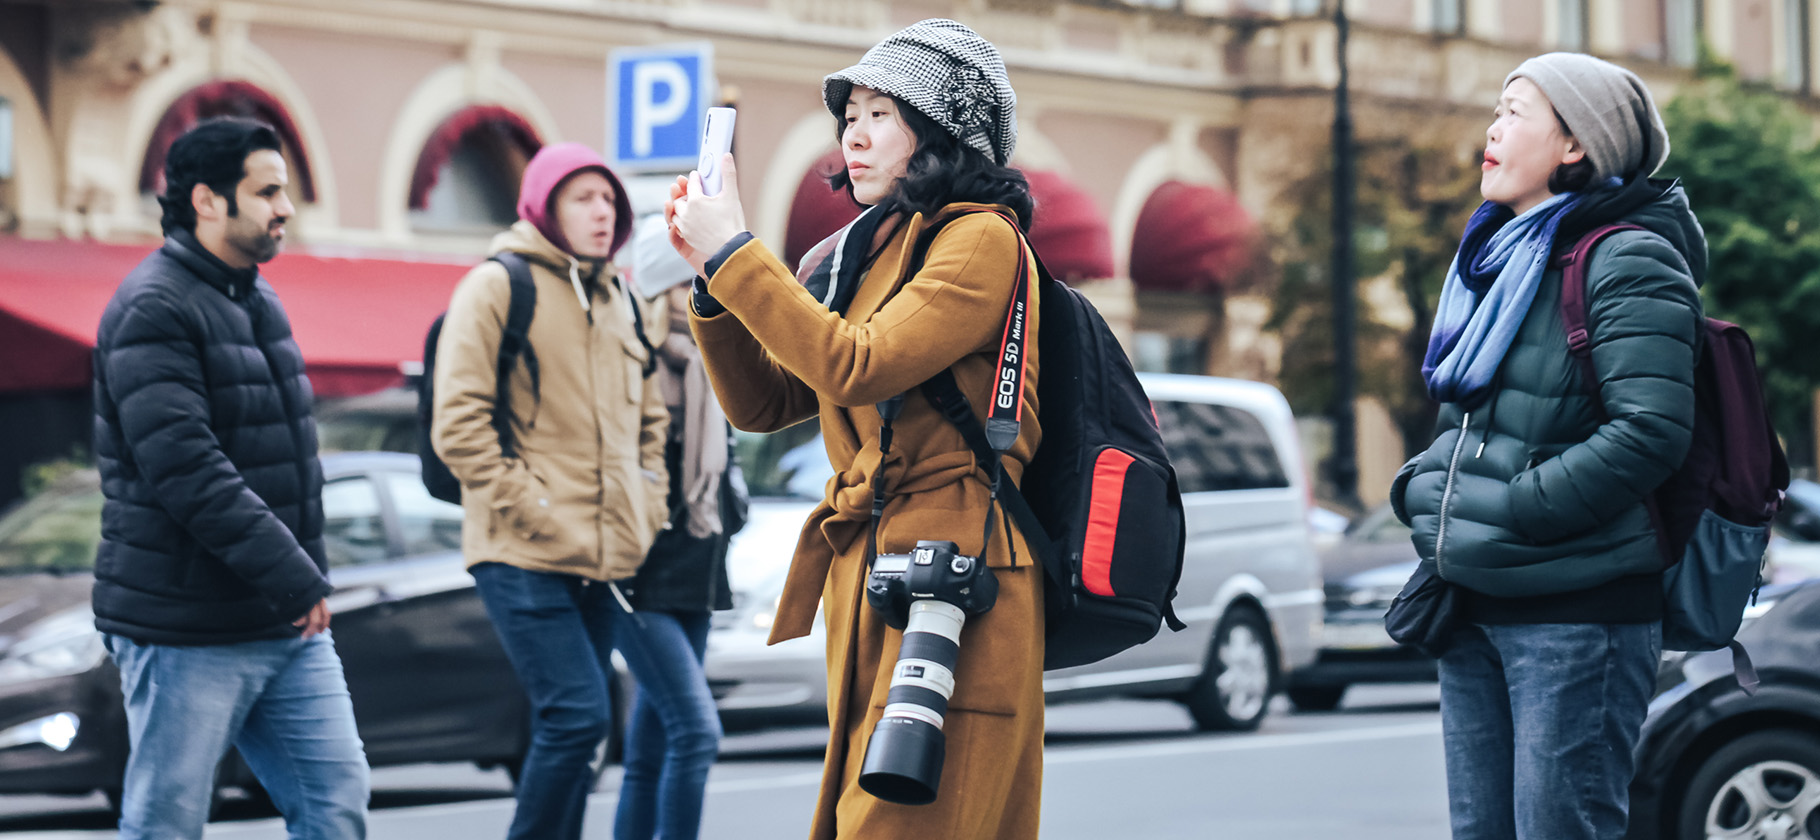 Как воруют фототехнику на улице: приемы и способы защититься